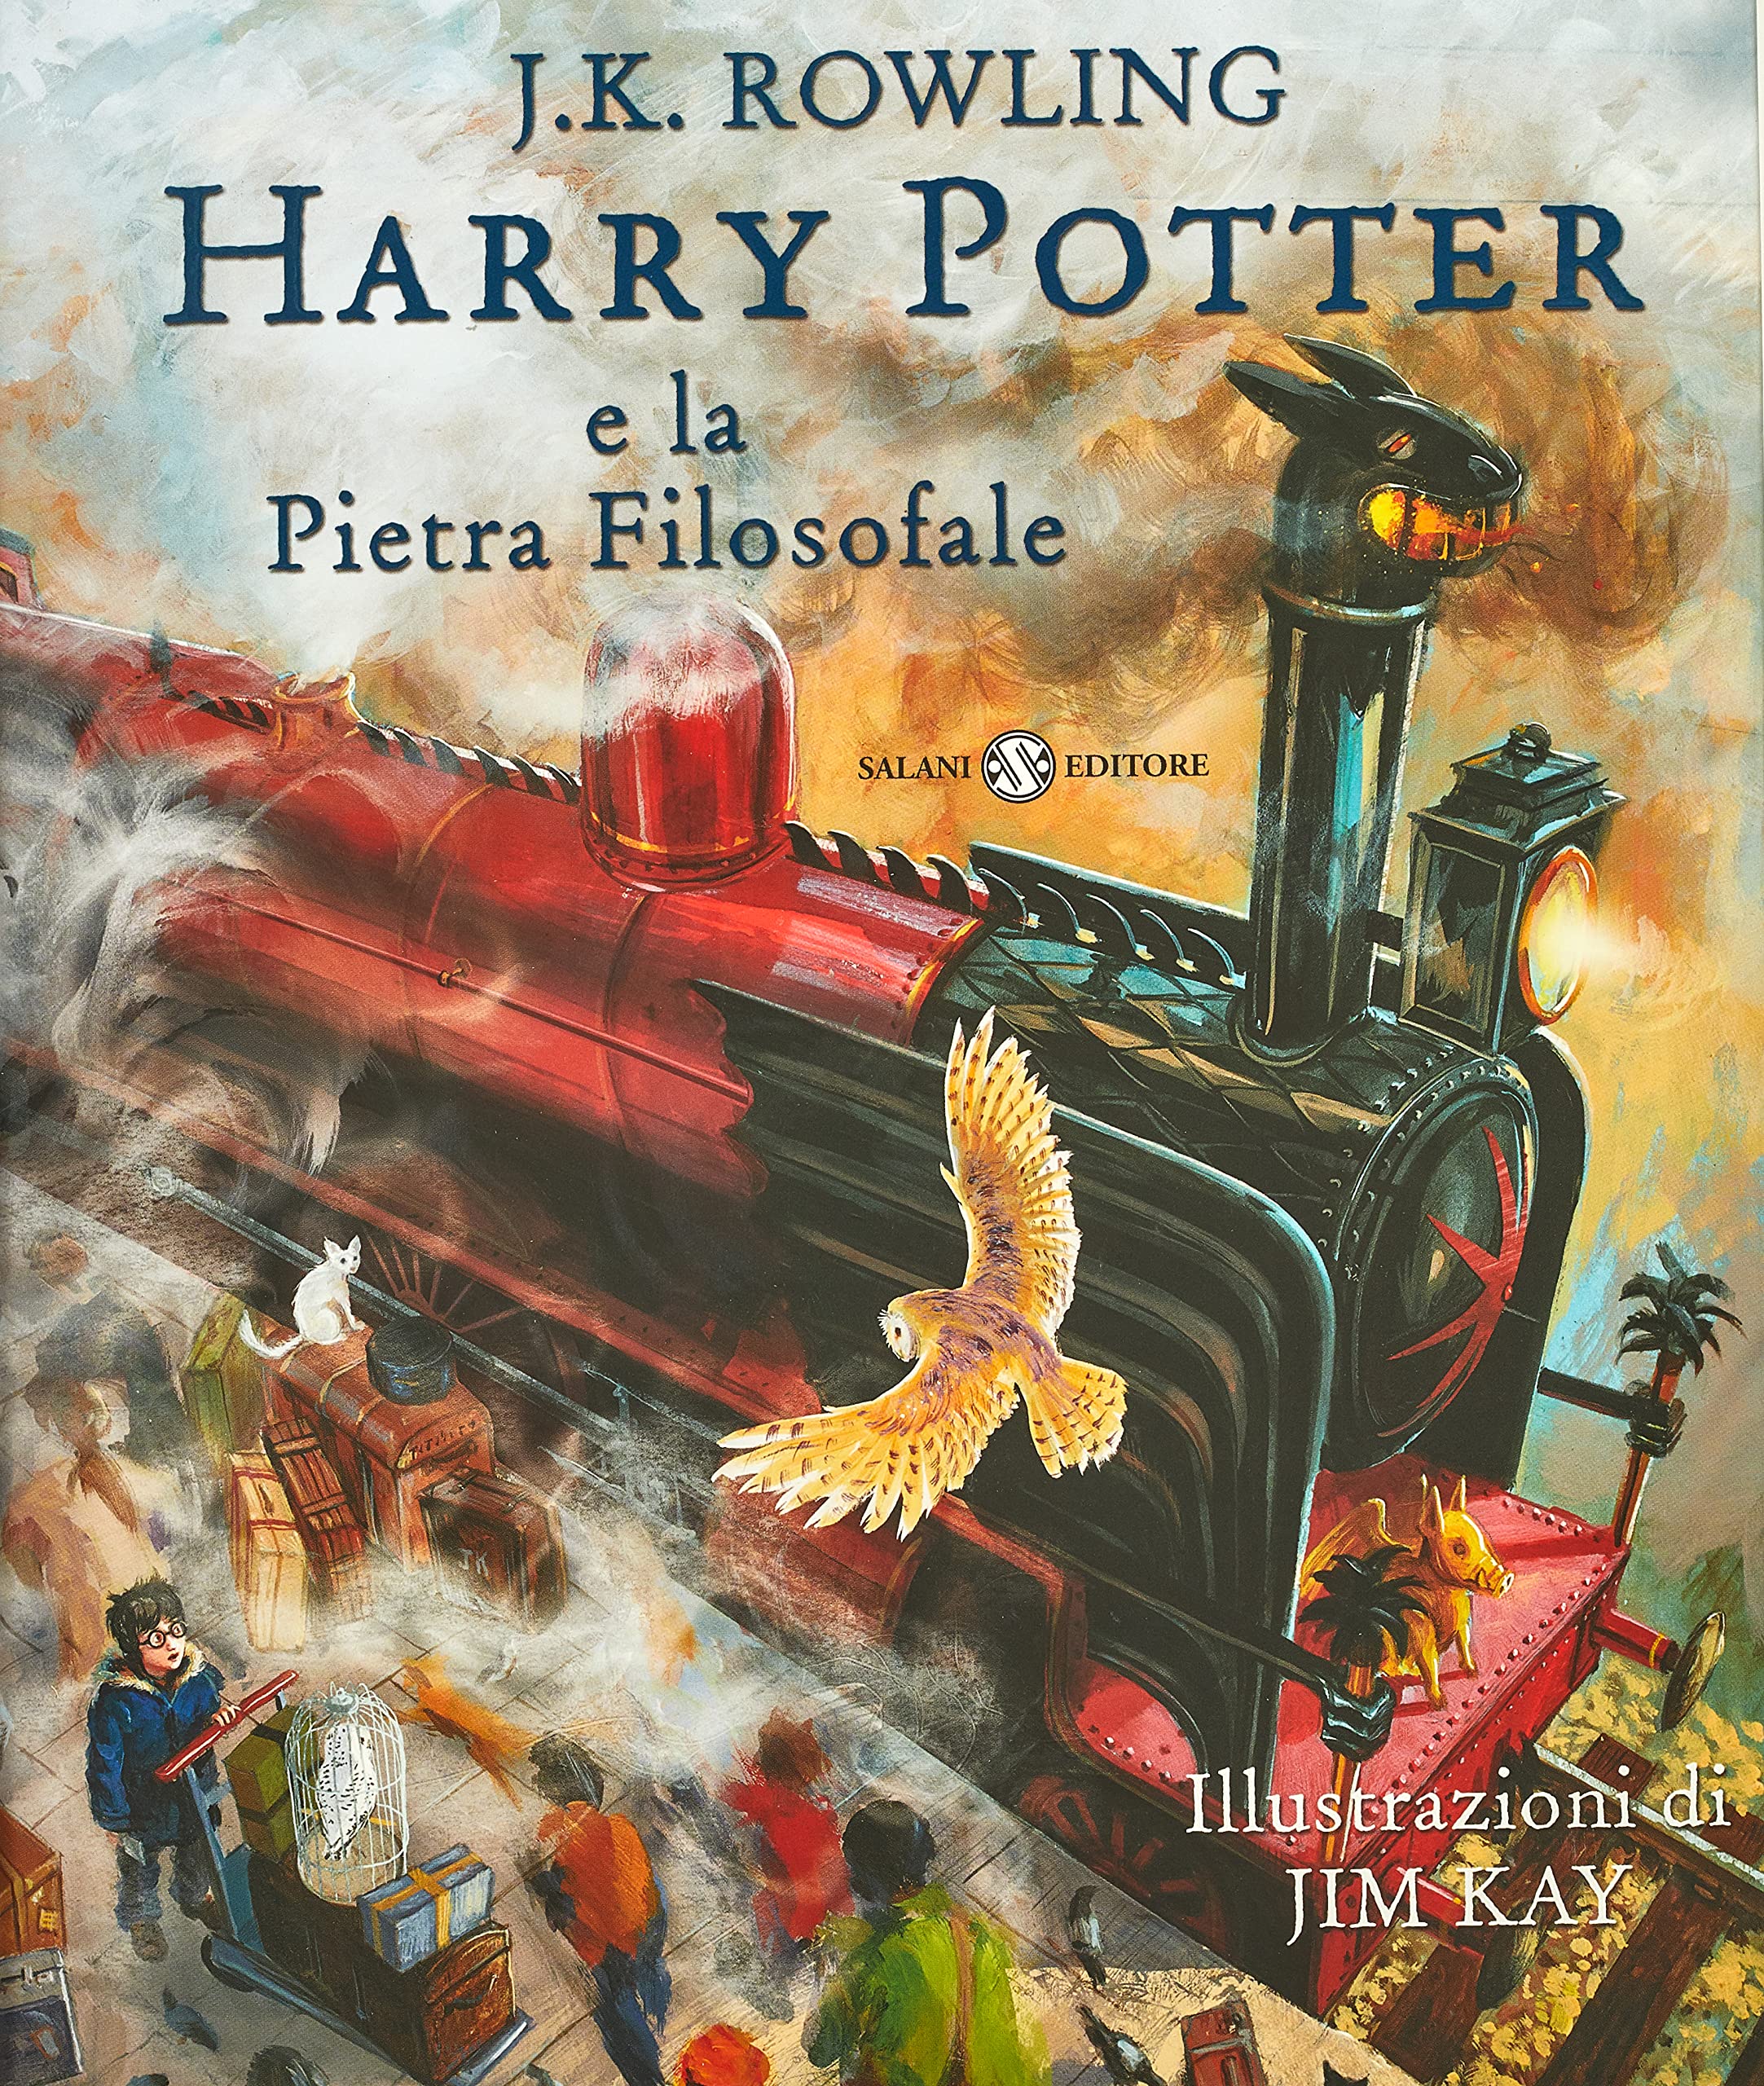 Harry Potter e la Pietra Filosofale - Edizione Illustrata